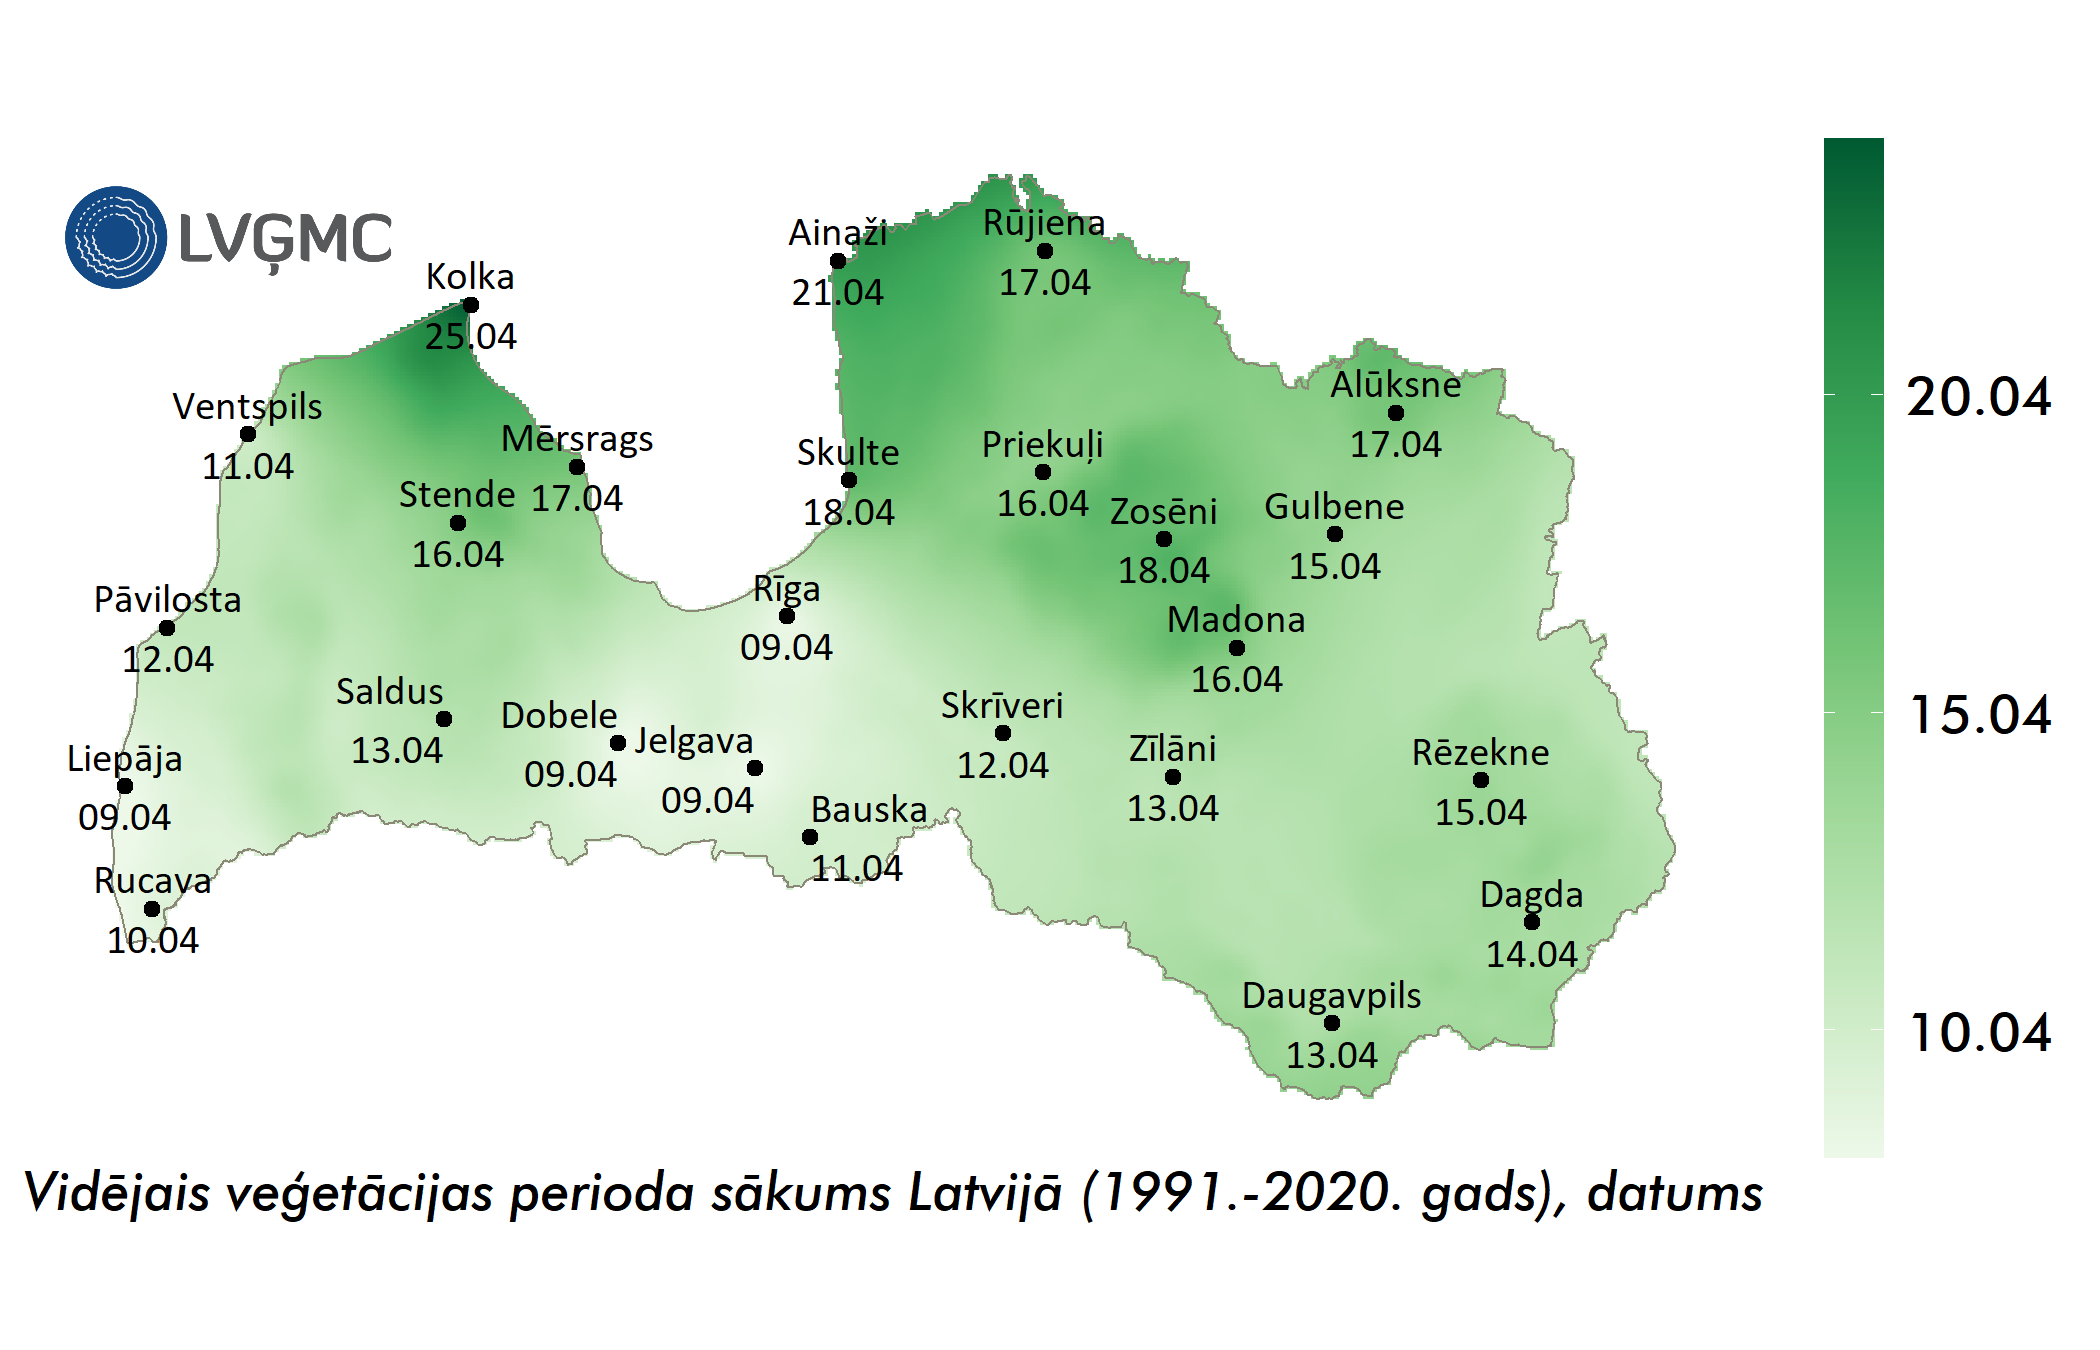 Vidējais eģetācijas perioda sākuma datums Latvijā